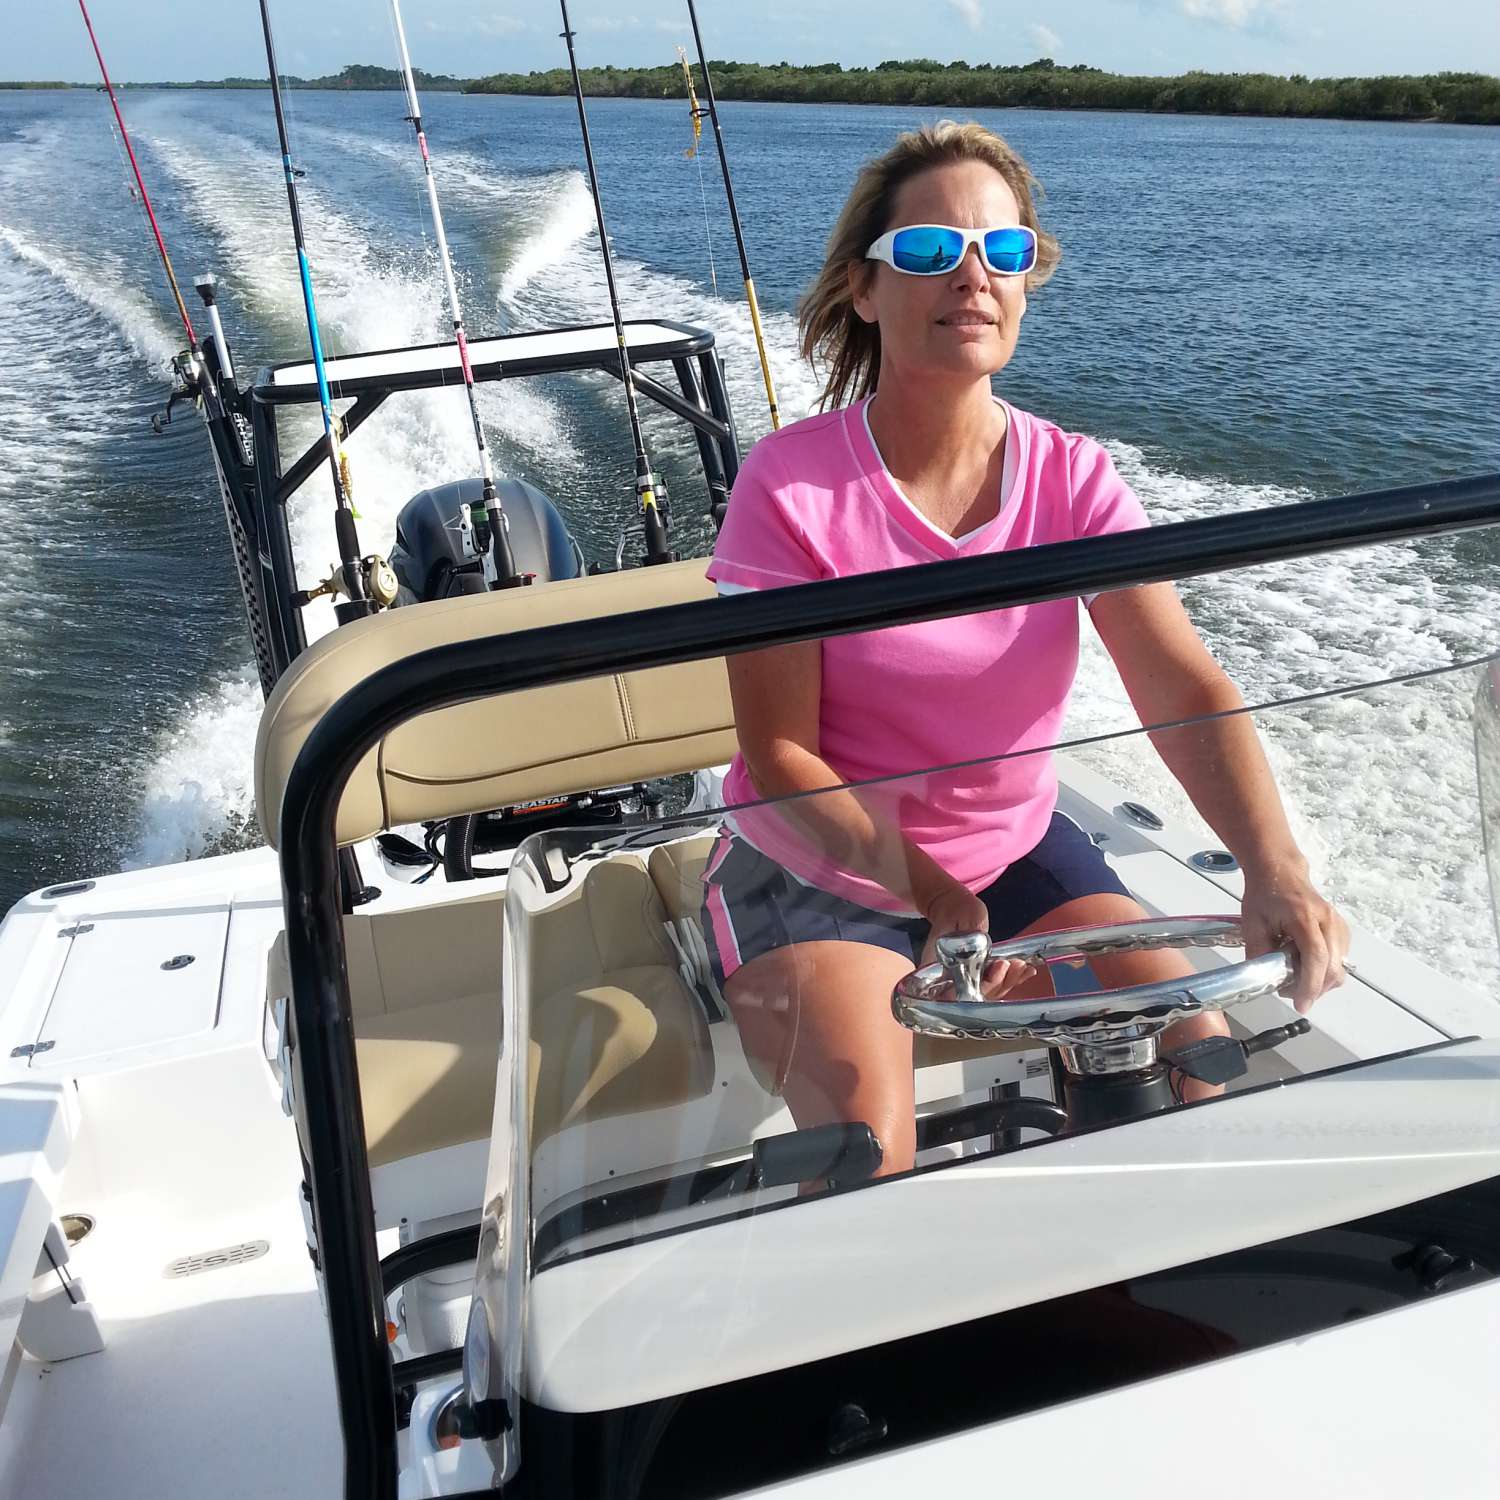 My photo was taken on the Halifax river Port Orange Florida, Lori enjoying her first time driving!